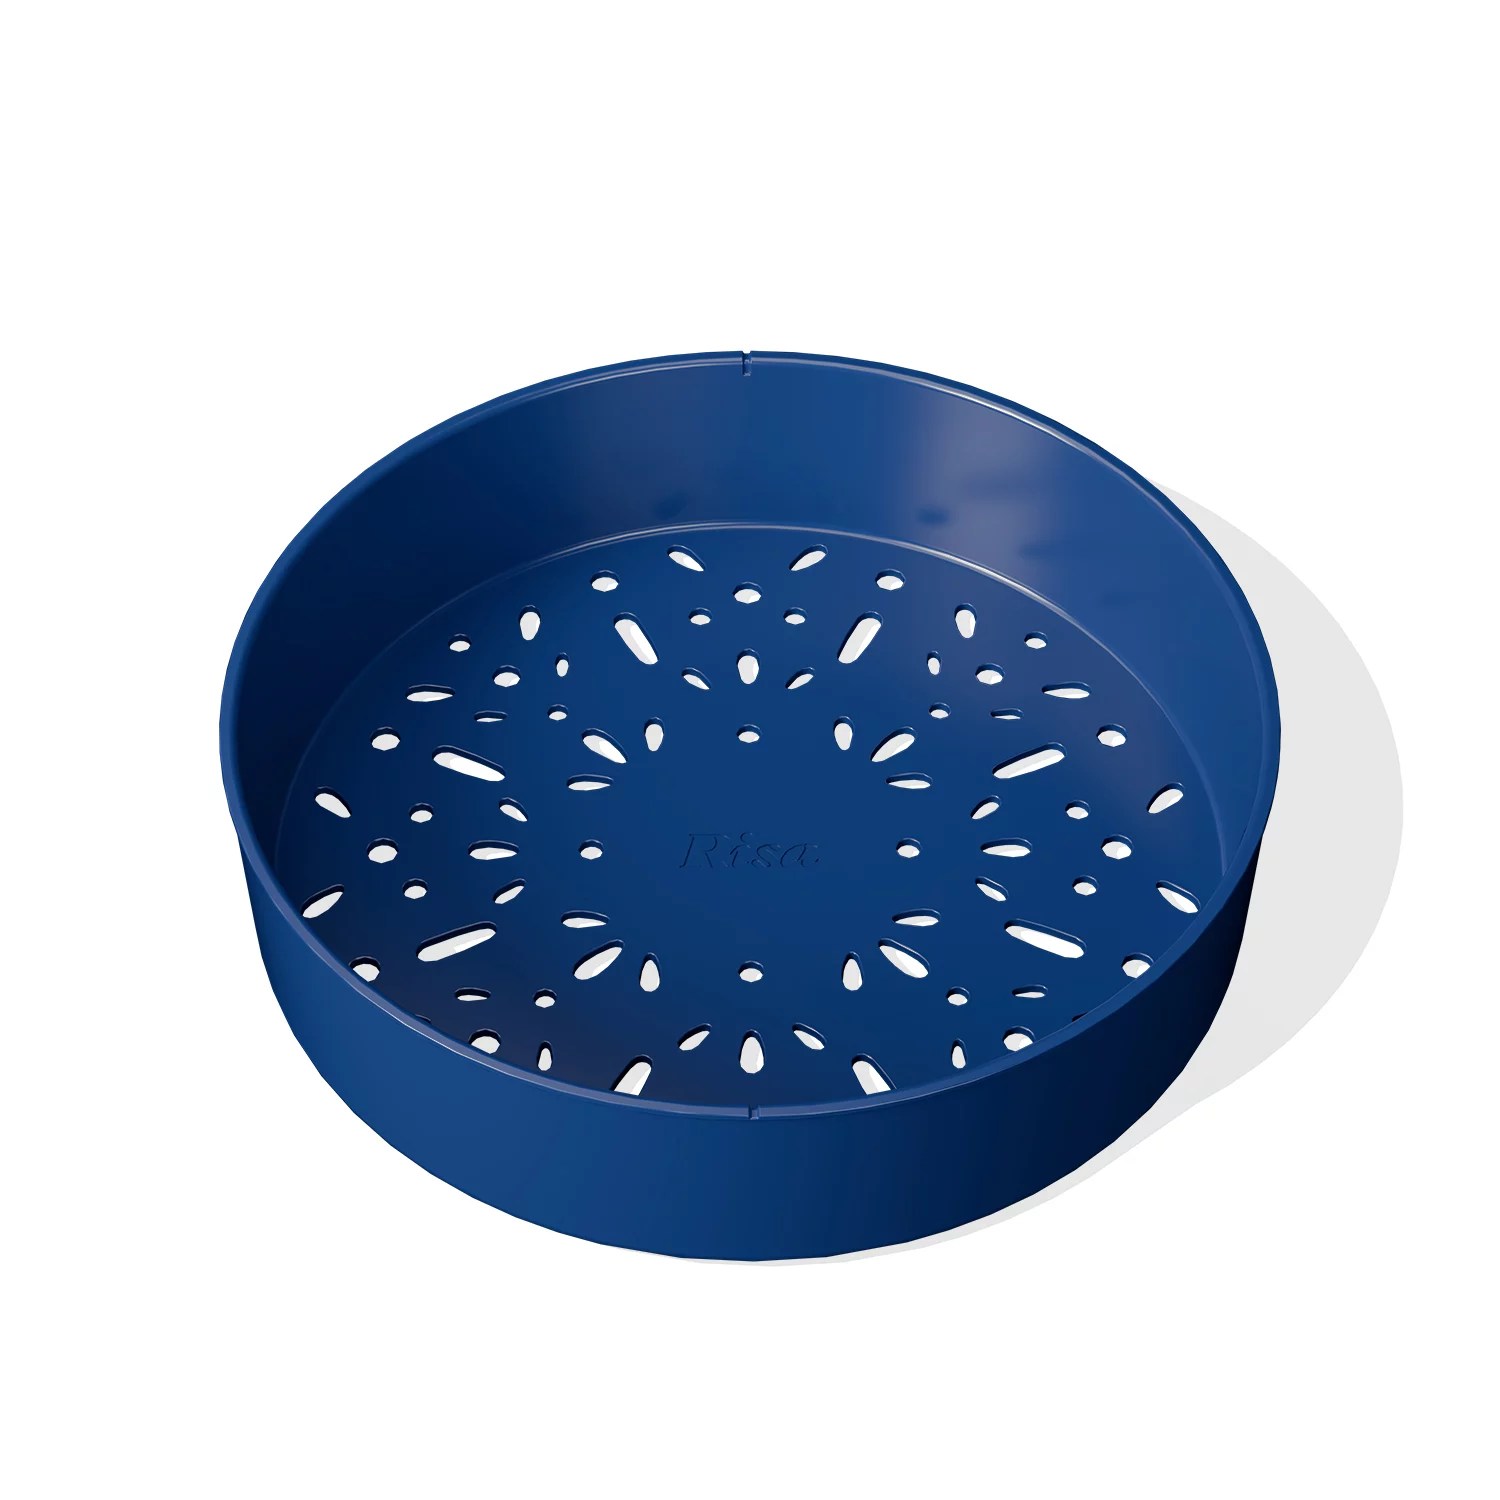 Risa Kitchen Nonstick Ceramic Stock Pot with Lid | Unisex | Grey | Aluminum